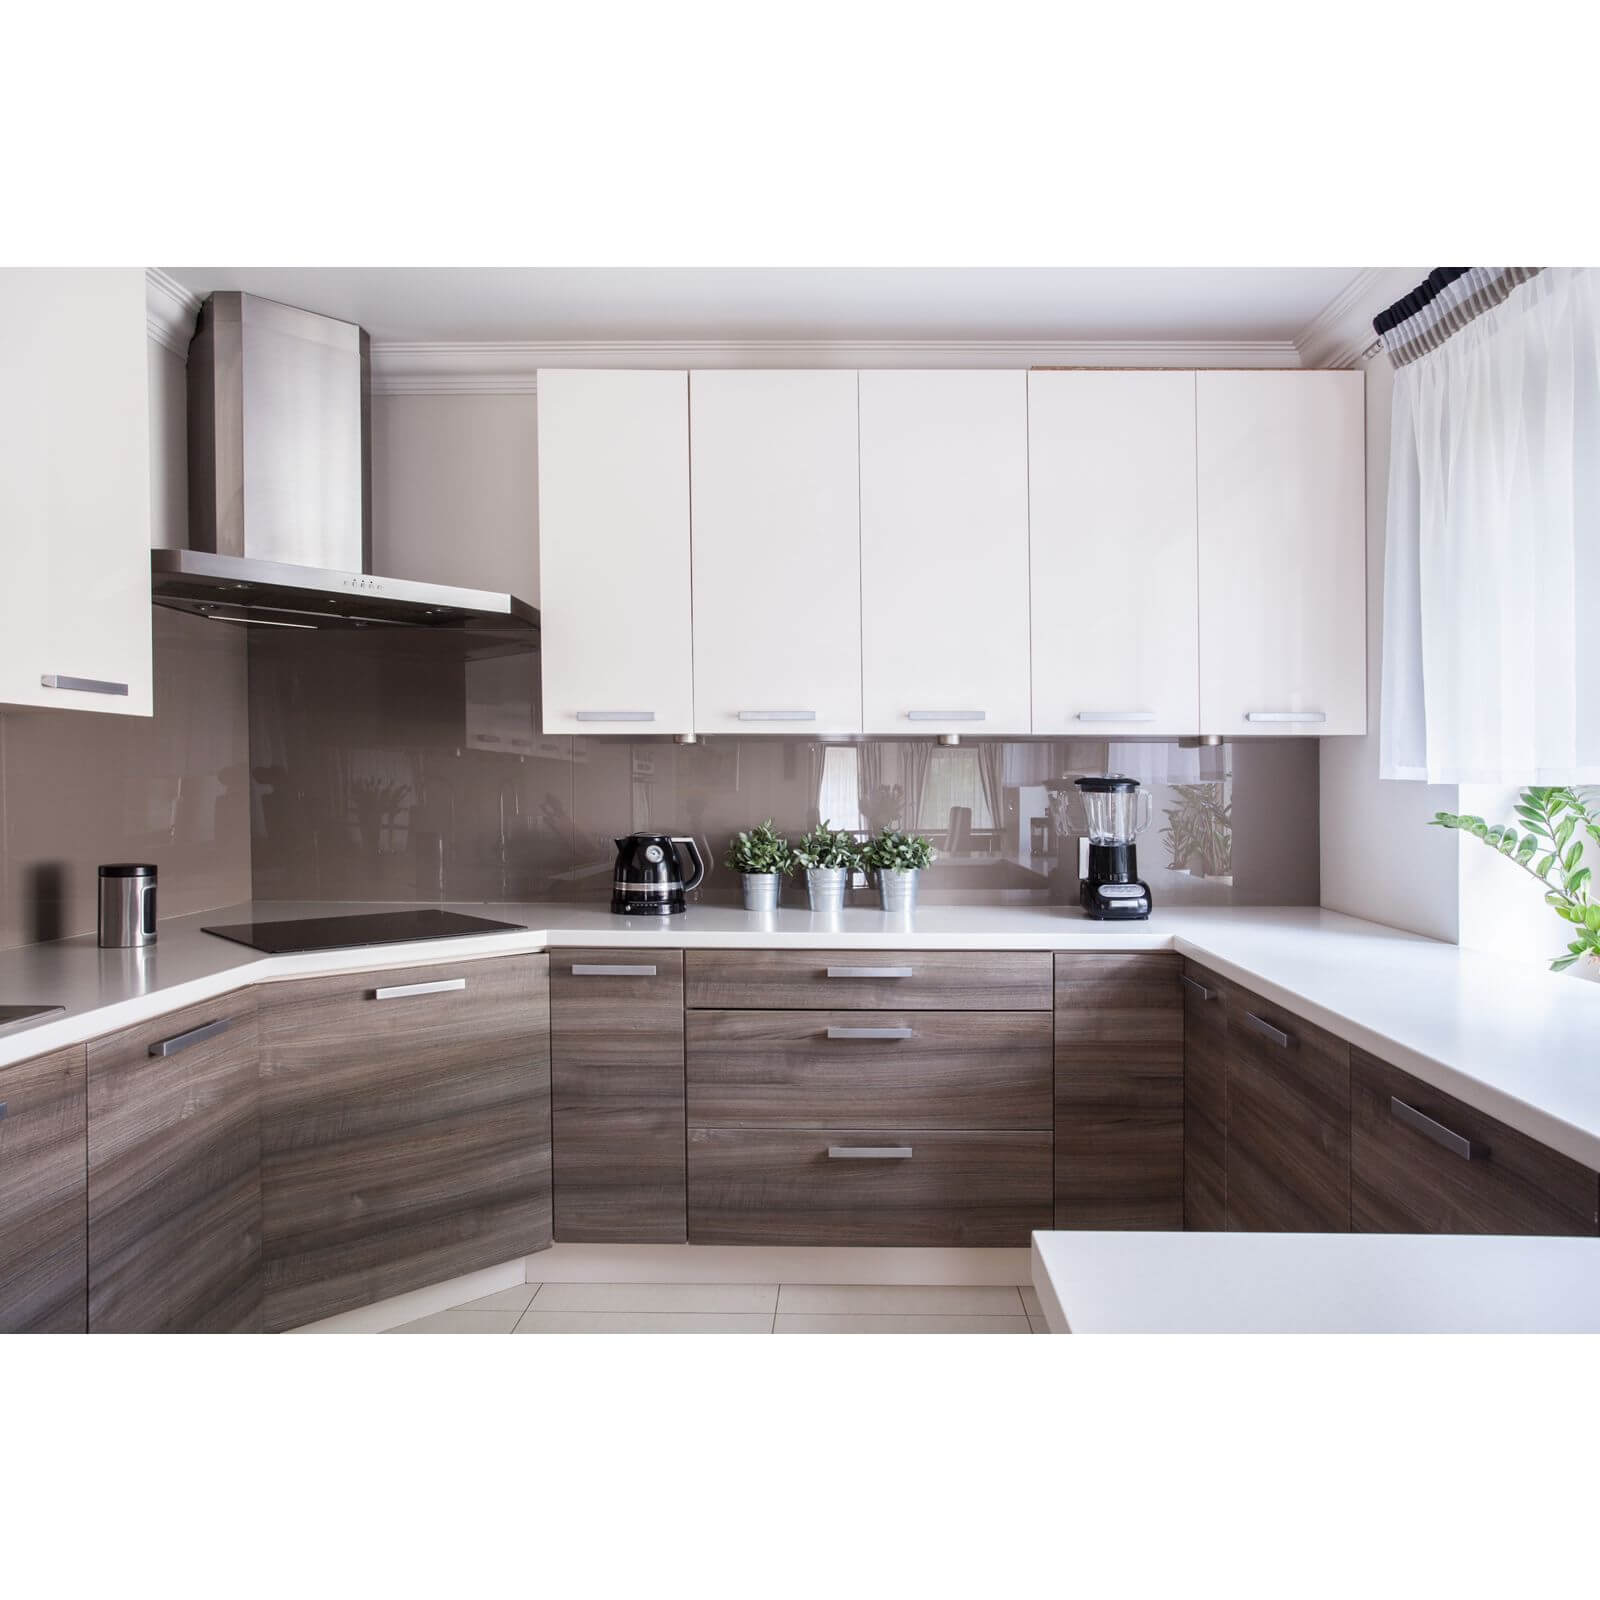 Zenolite Acrylic Kitchen Splashback Panel - 2440 x 605 x 4mm - Mocha